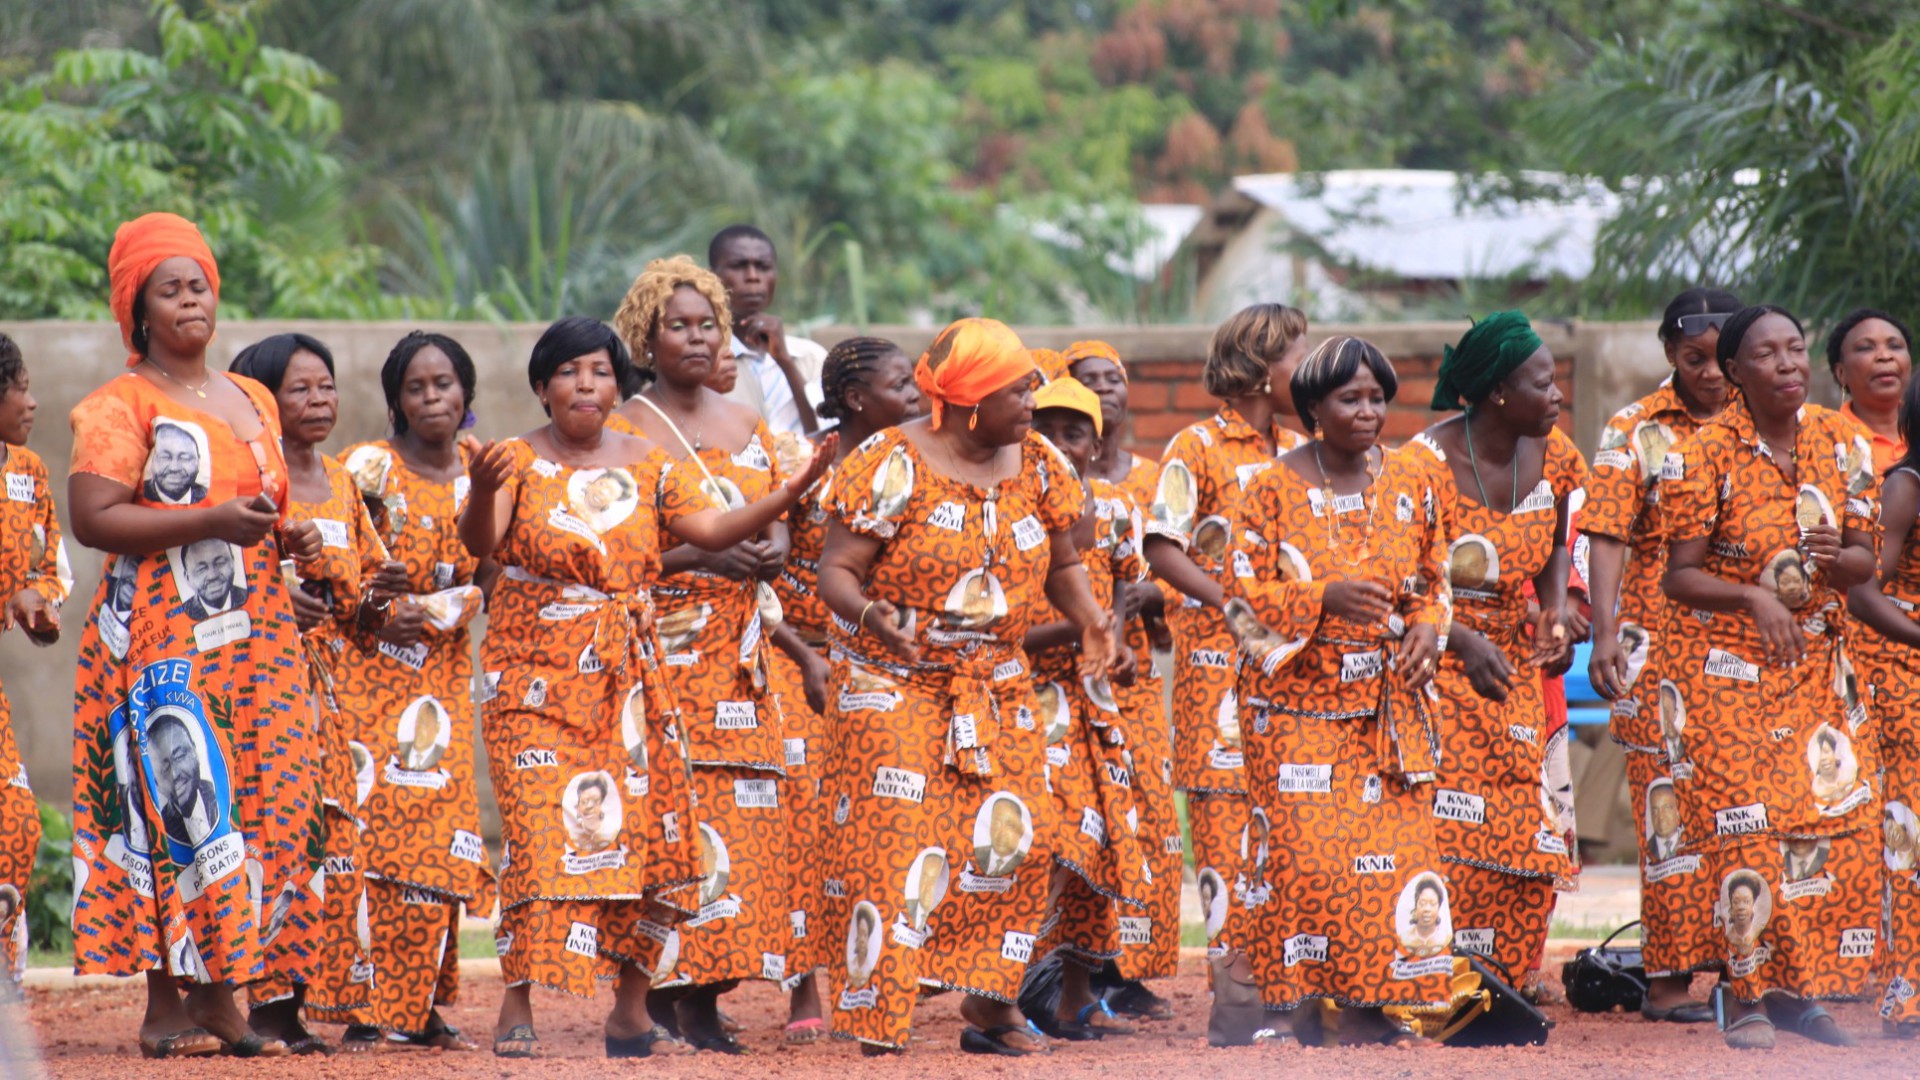 Les habitants de Bangui sont prêts pour la venue du pape François (Photo d'illustration:Kayikwamba/Flickr/CC BY-NC-ND 2.0)